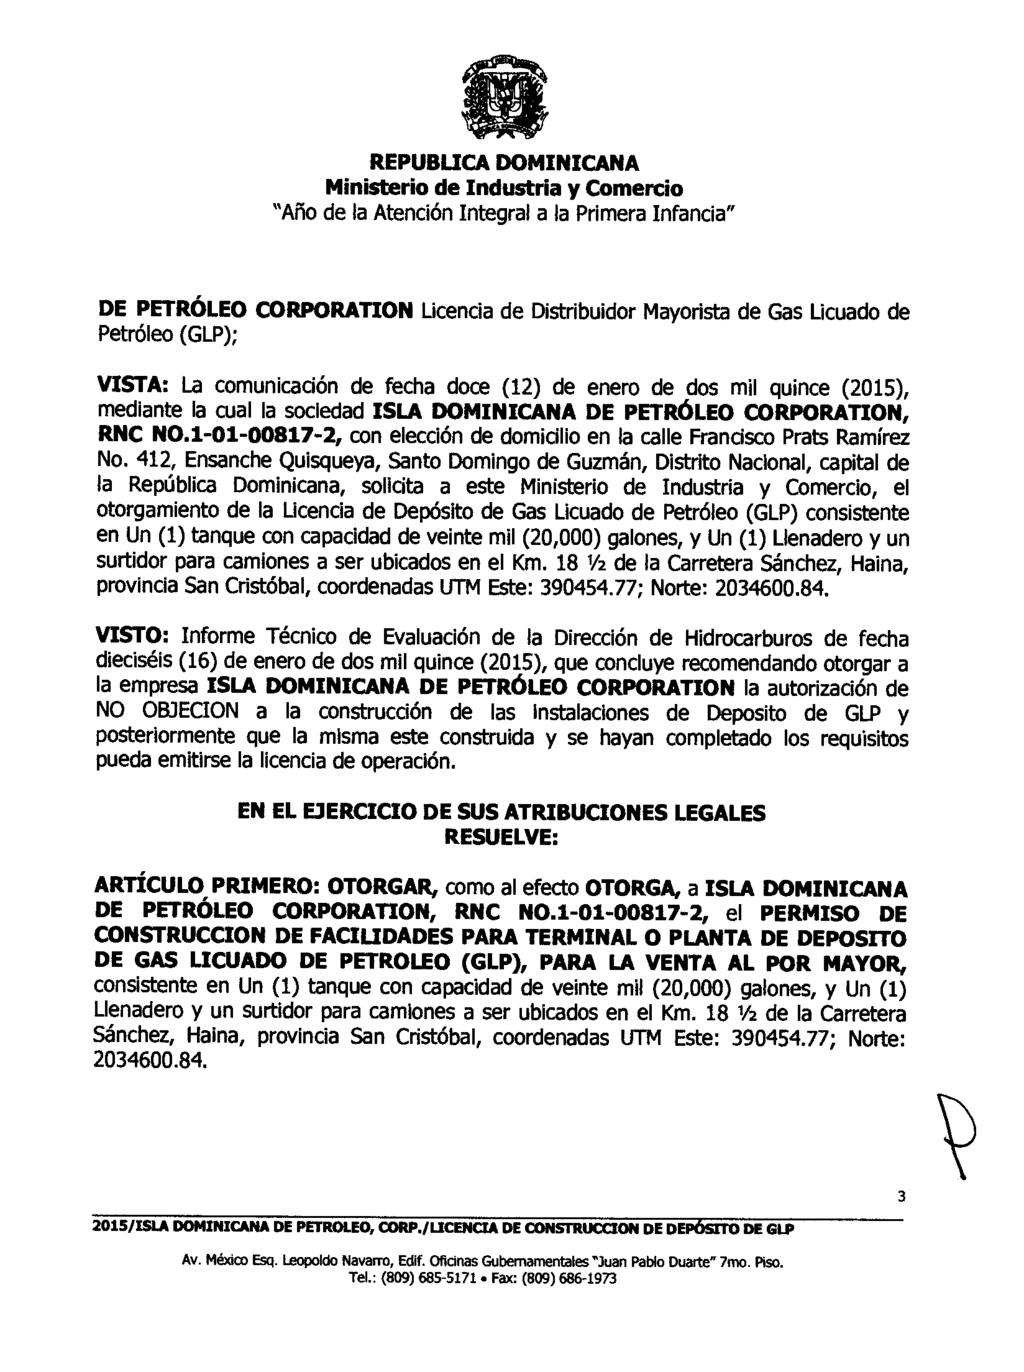 DE PETRÓLEO CORPORATION Licencia de Distribuidor Mayorista de Gas Licuado de Petróleo (GLP); VISTA: La comunicación de fecha doce (12) de enero de dos mil quince (2015), mediante la cual la sociedad